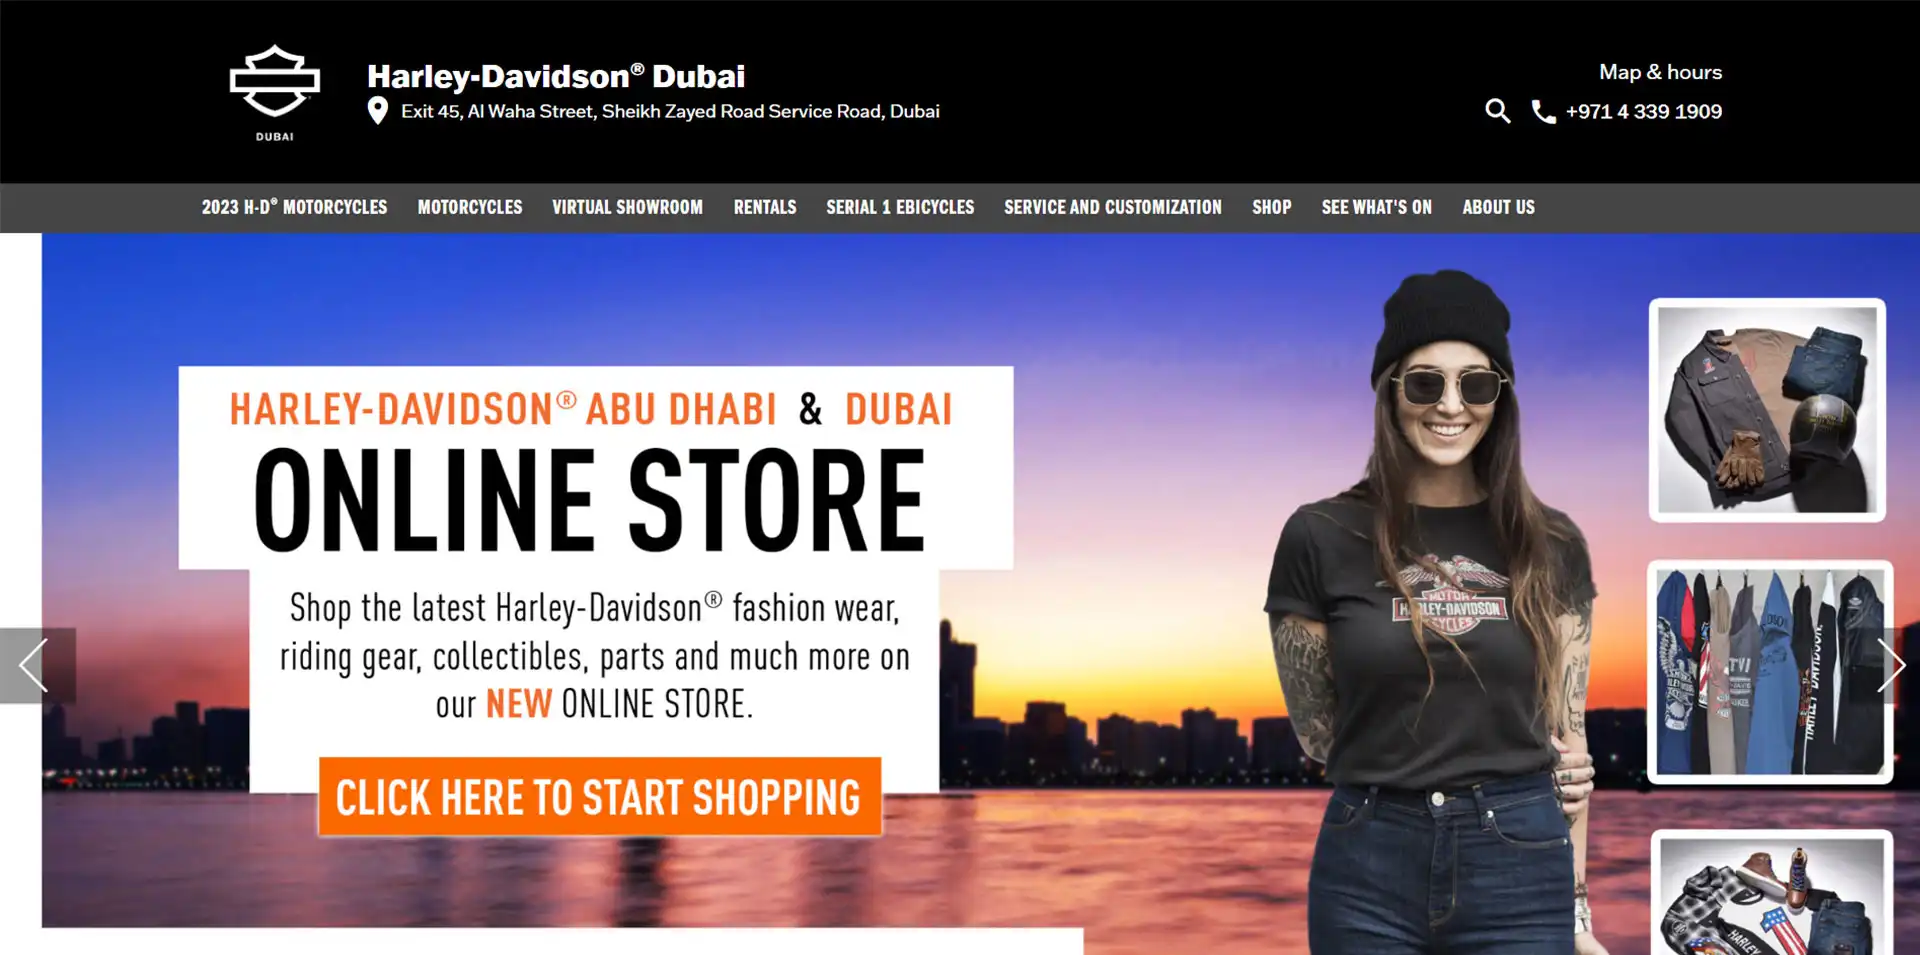 Harley Davidson Dubai